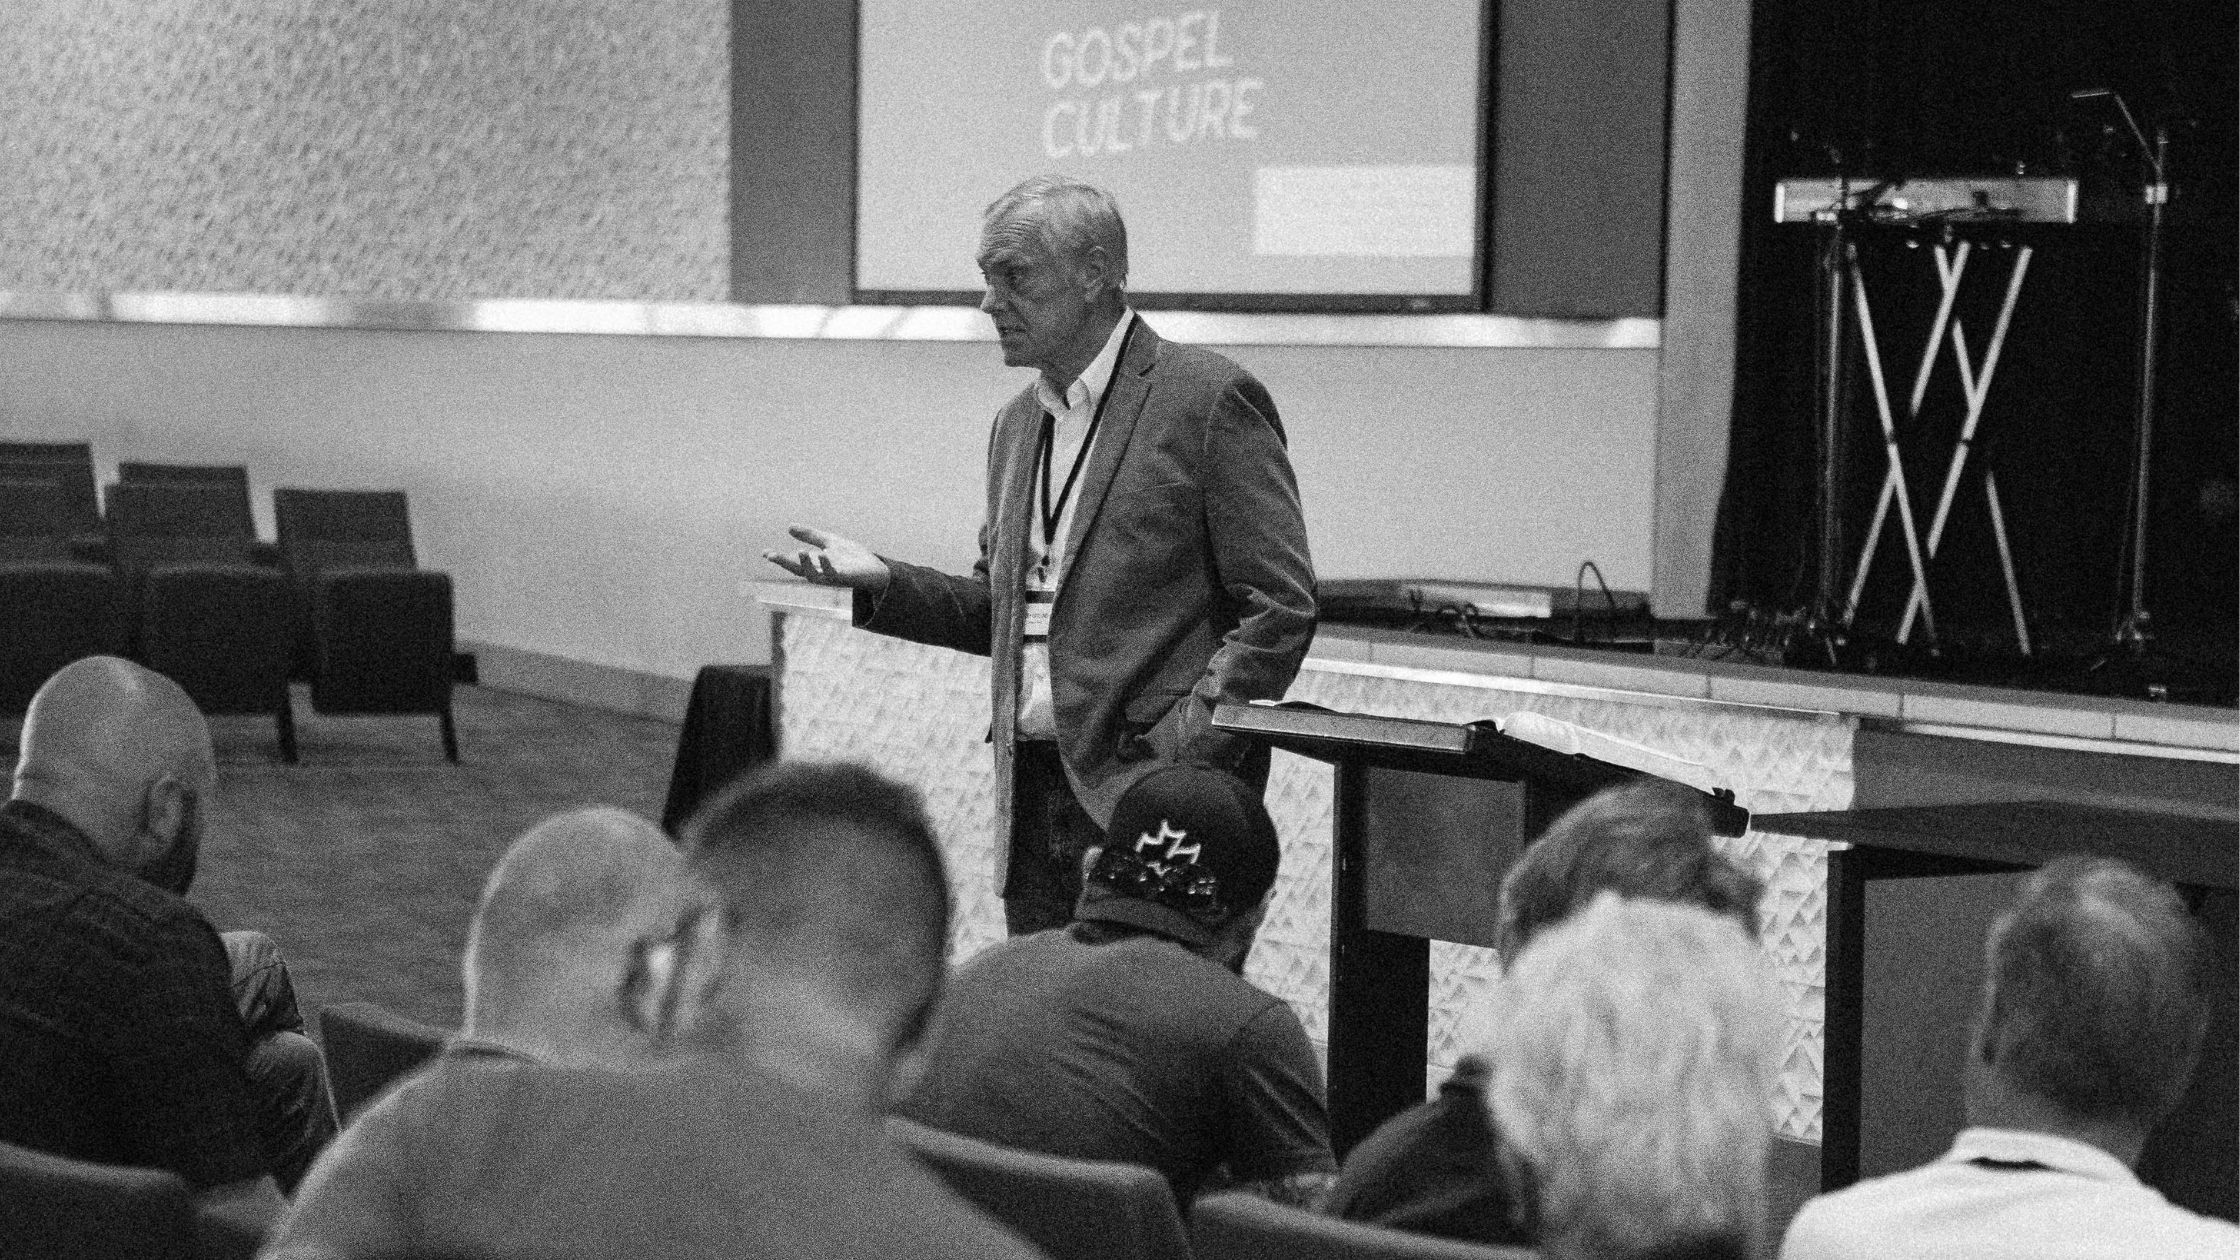 How Gospel Doctrine Creates Gospel Culture (Ray Ortlund) – Bonus Episode